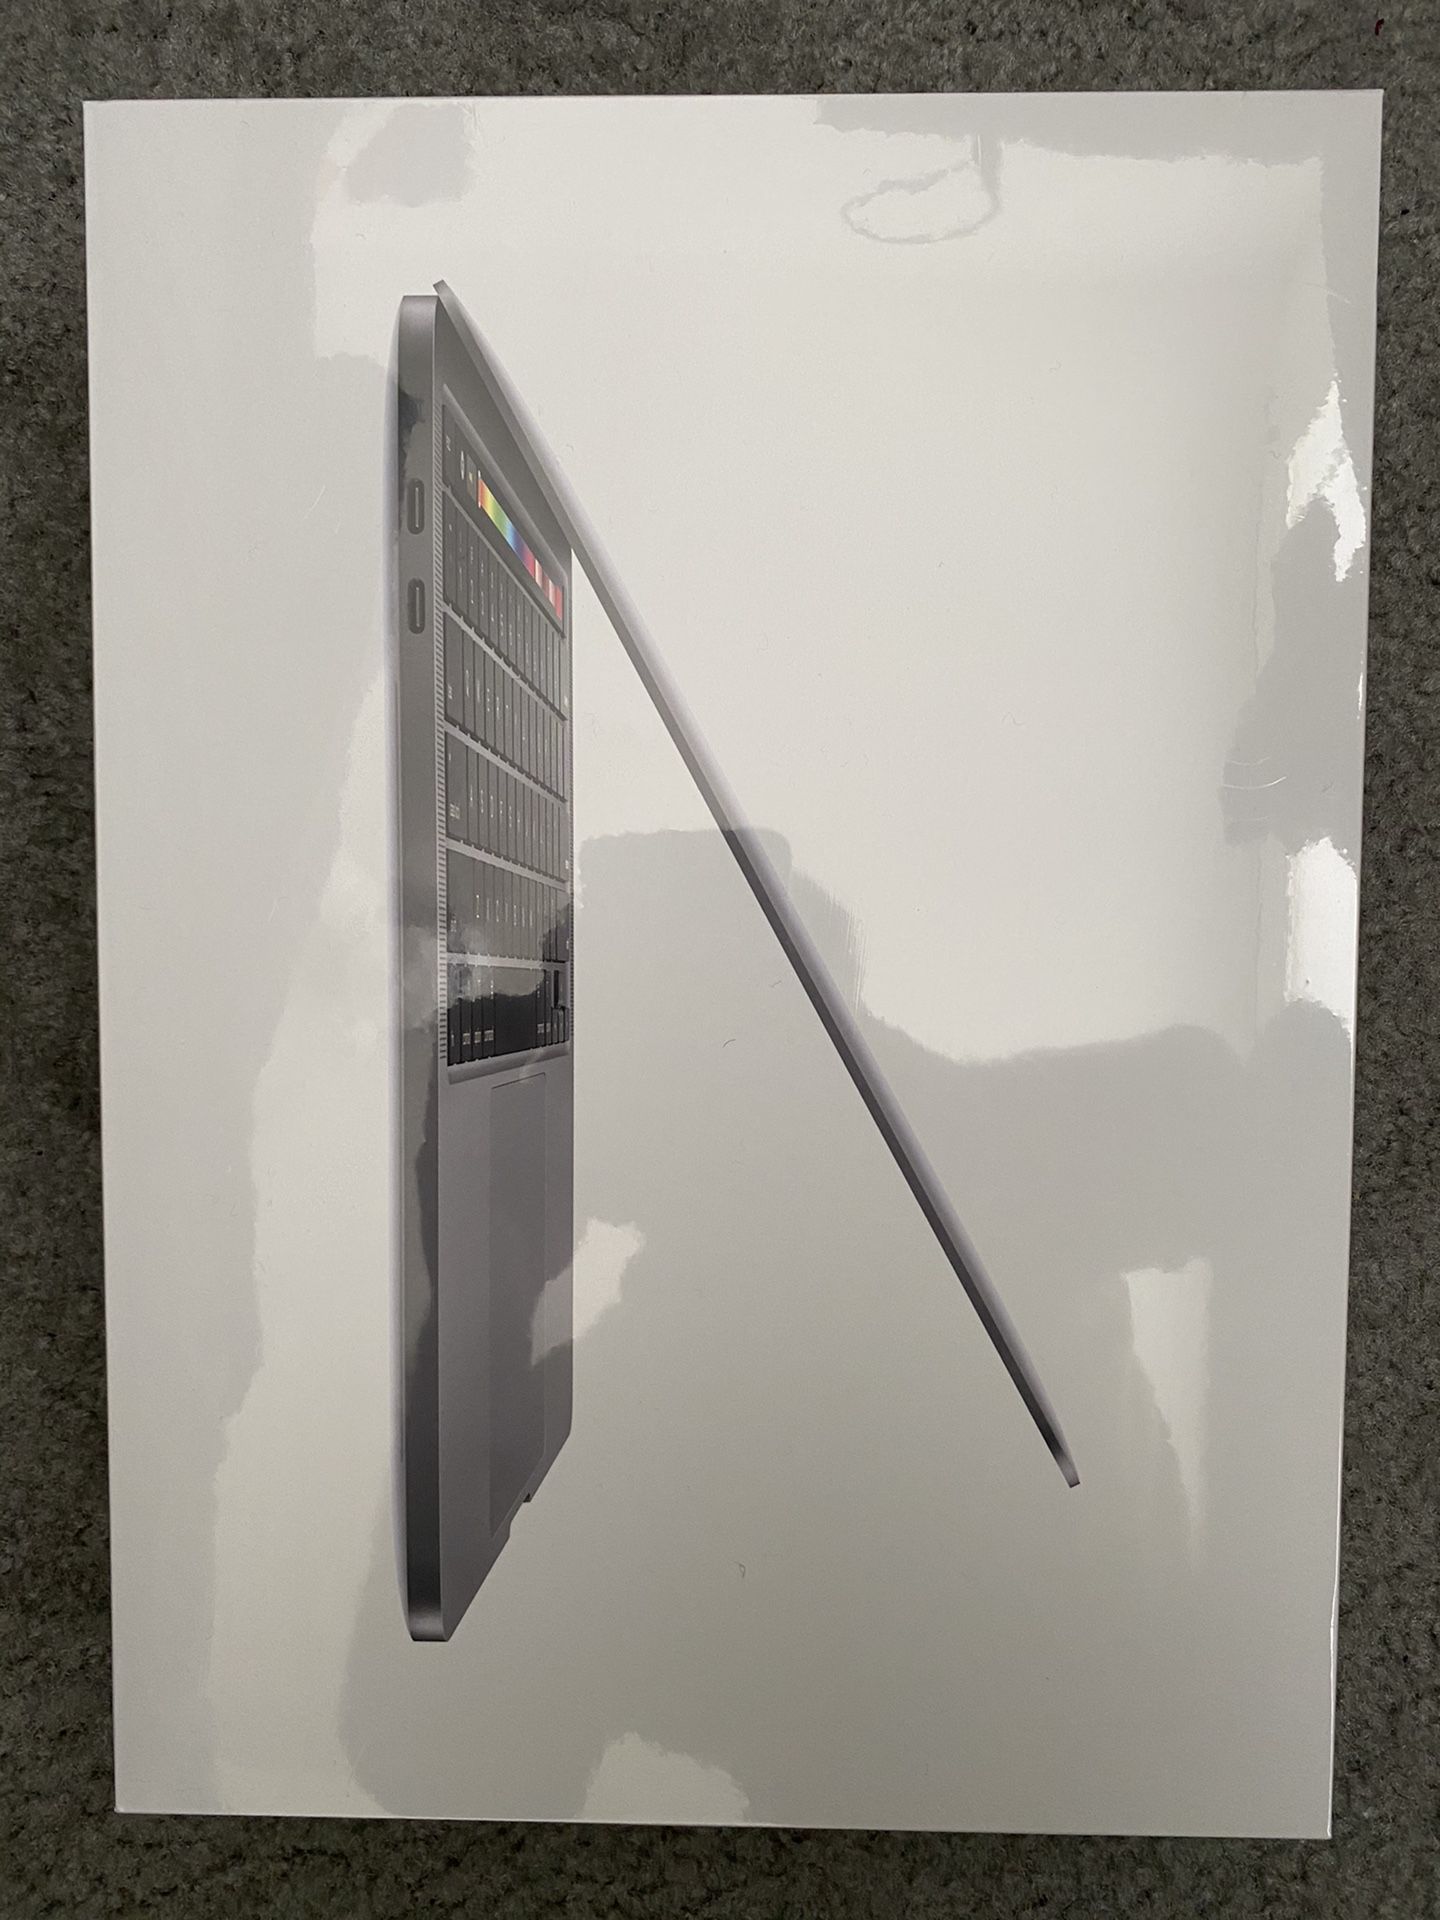 13 inch Apple MacBook Pro